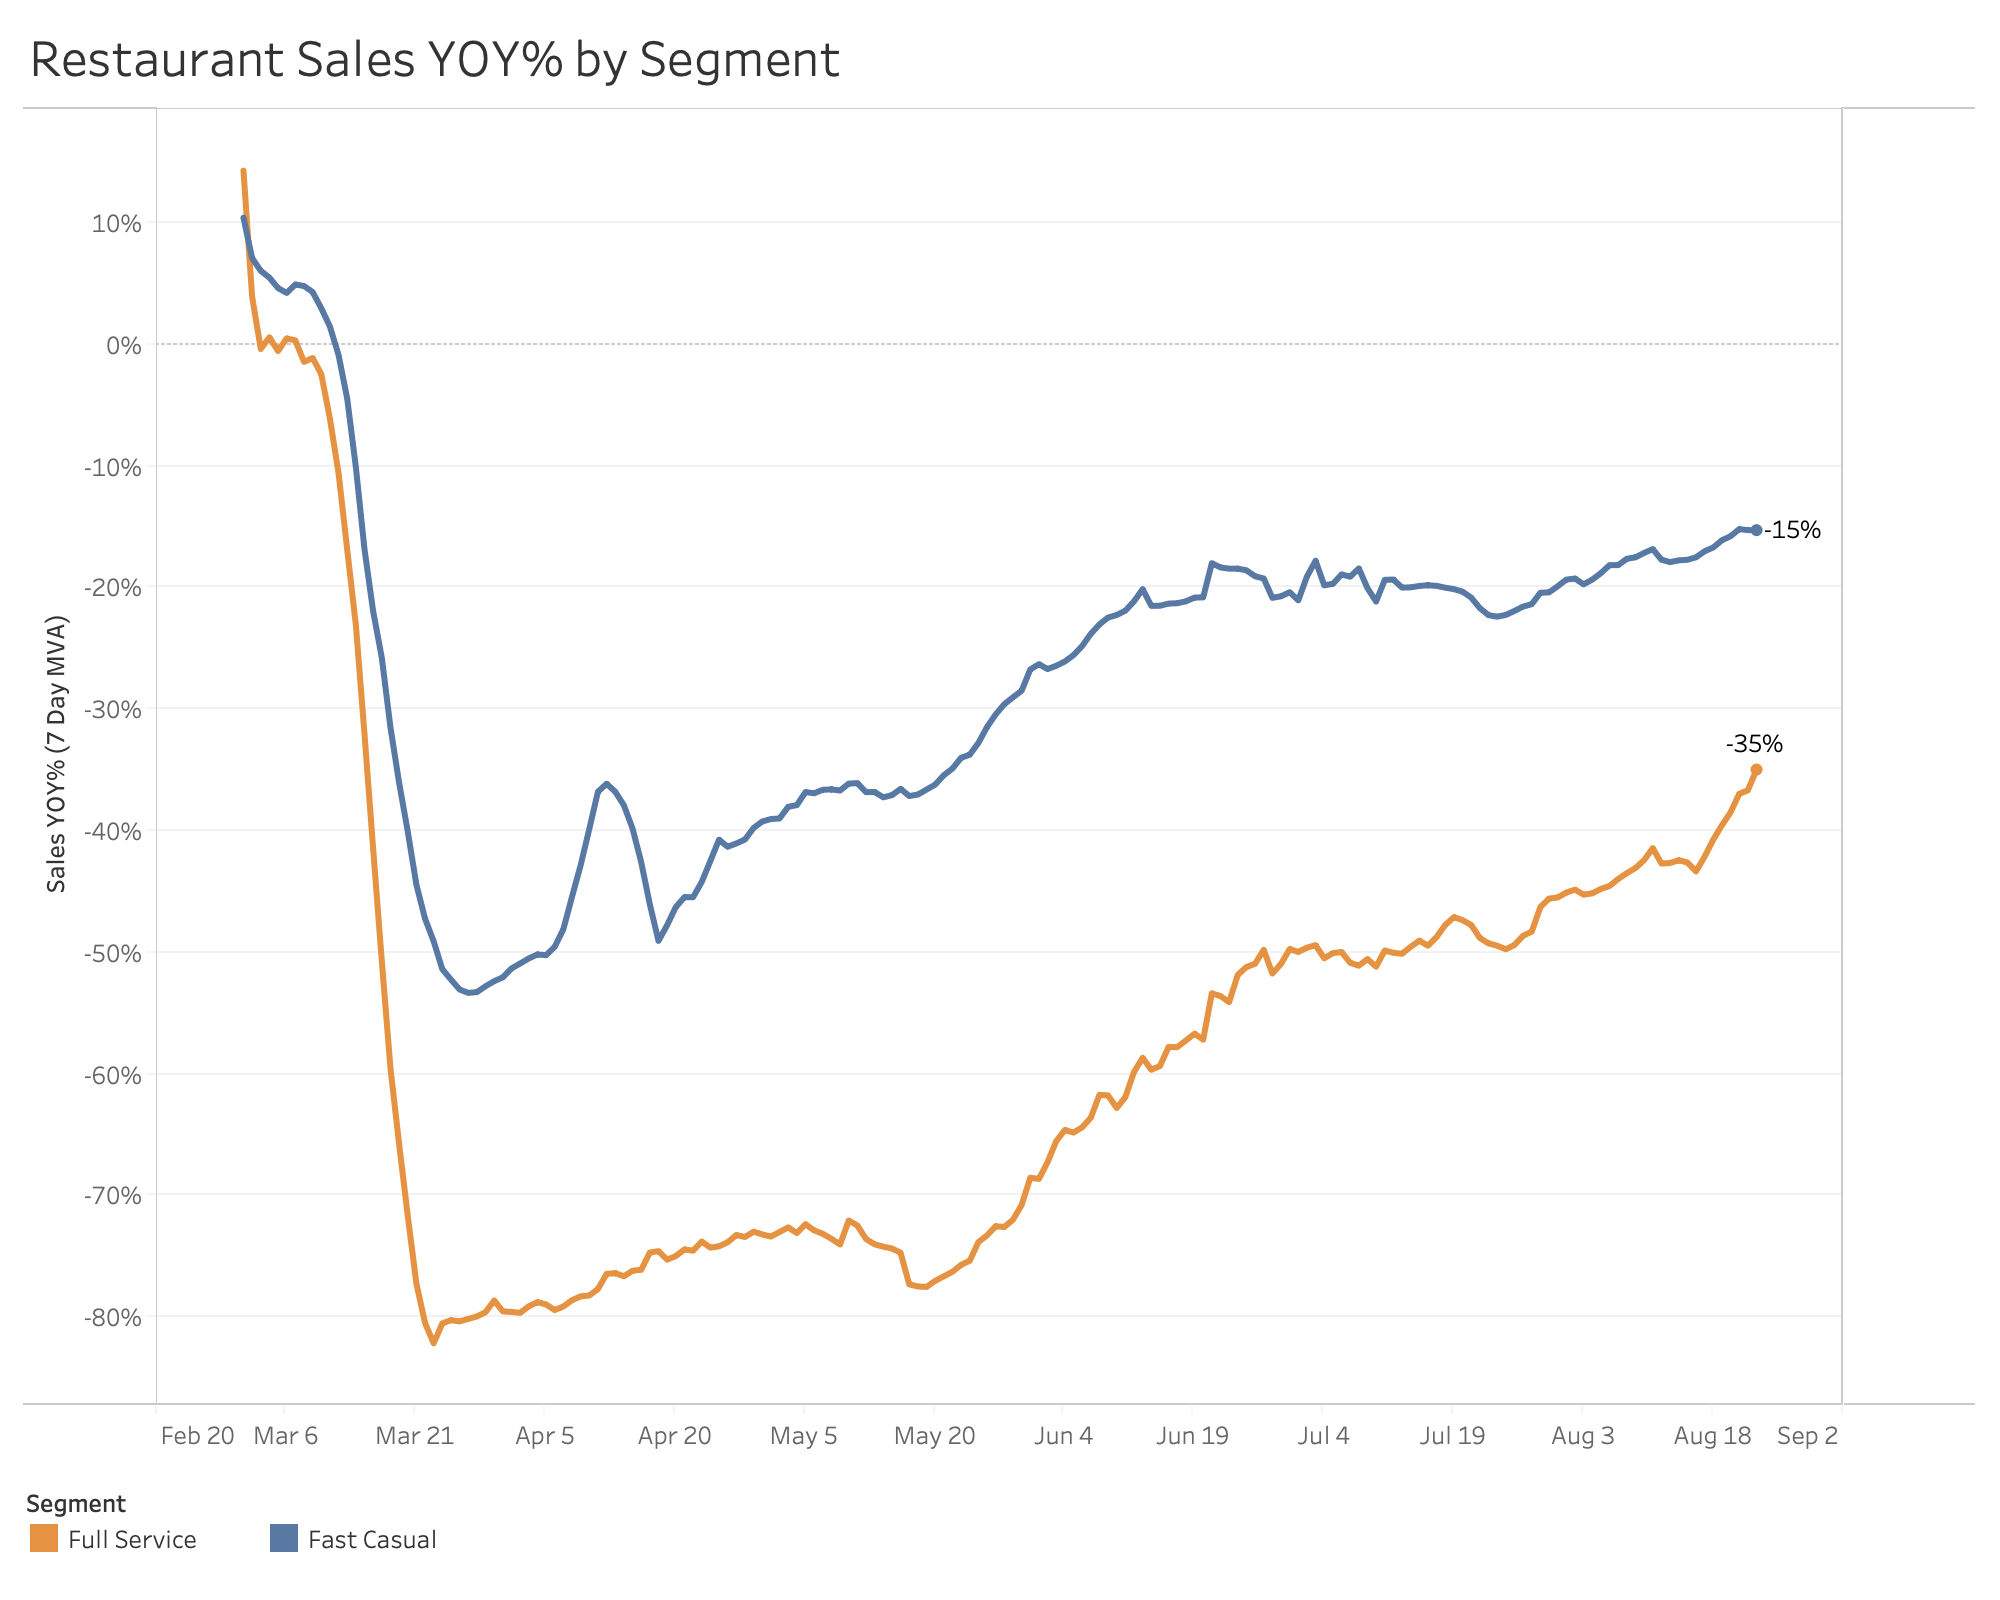 YOY sales by segment